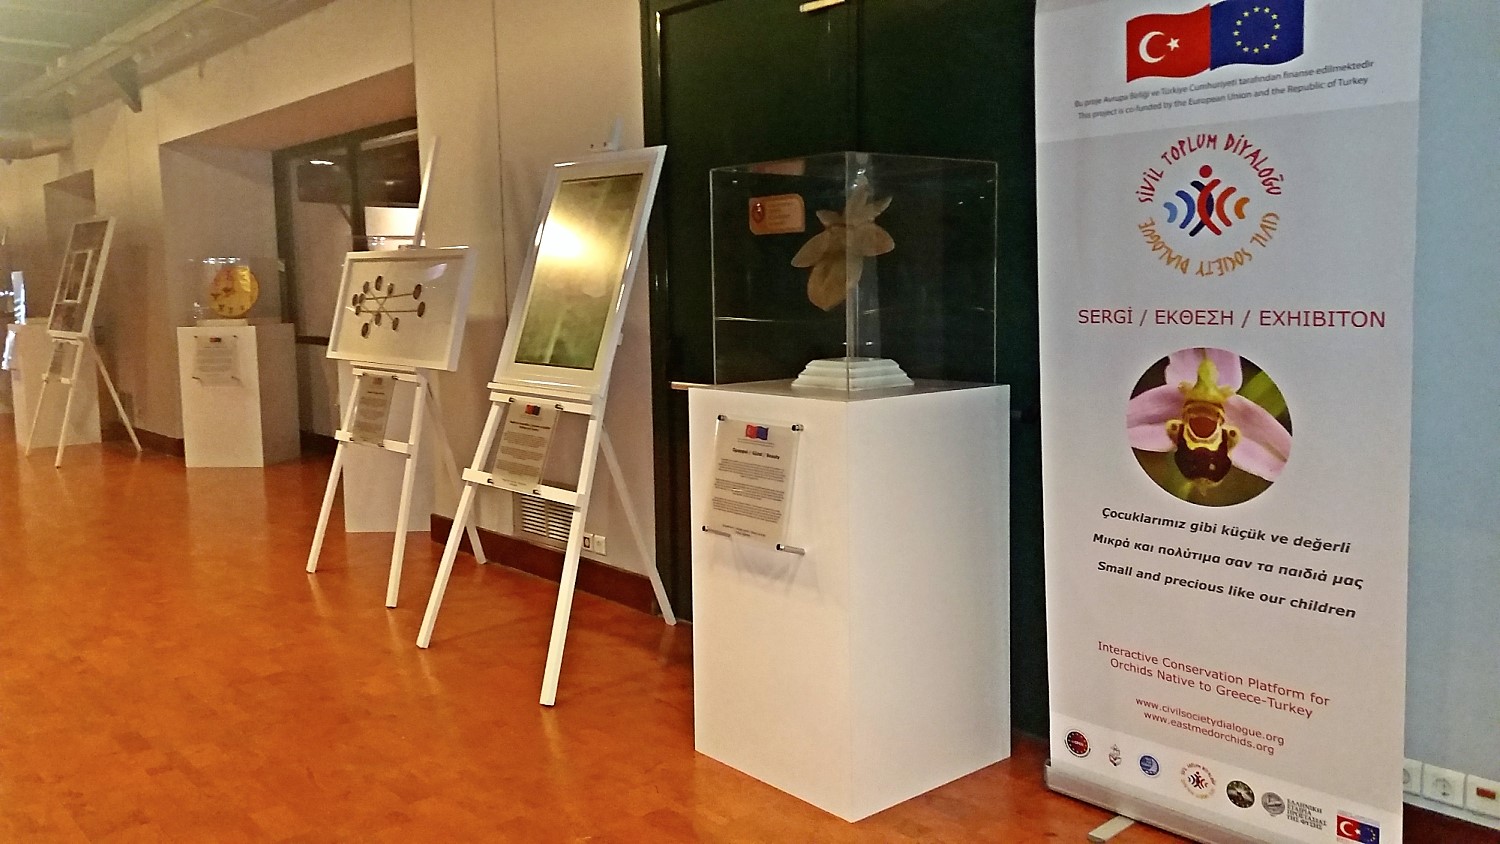 Εκθεση για την προστασία των άγριων ορχιδεών Ελλάδας και Τουρκίας στο Μουσείο Φυσικής Ιστορίας Κρήτης (ΜΦΙΚ)